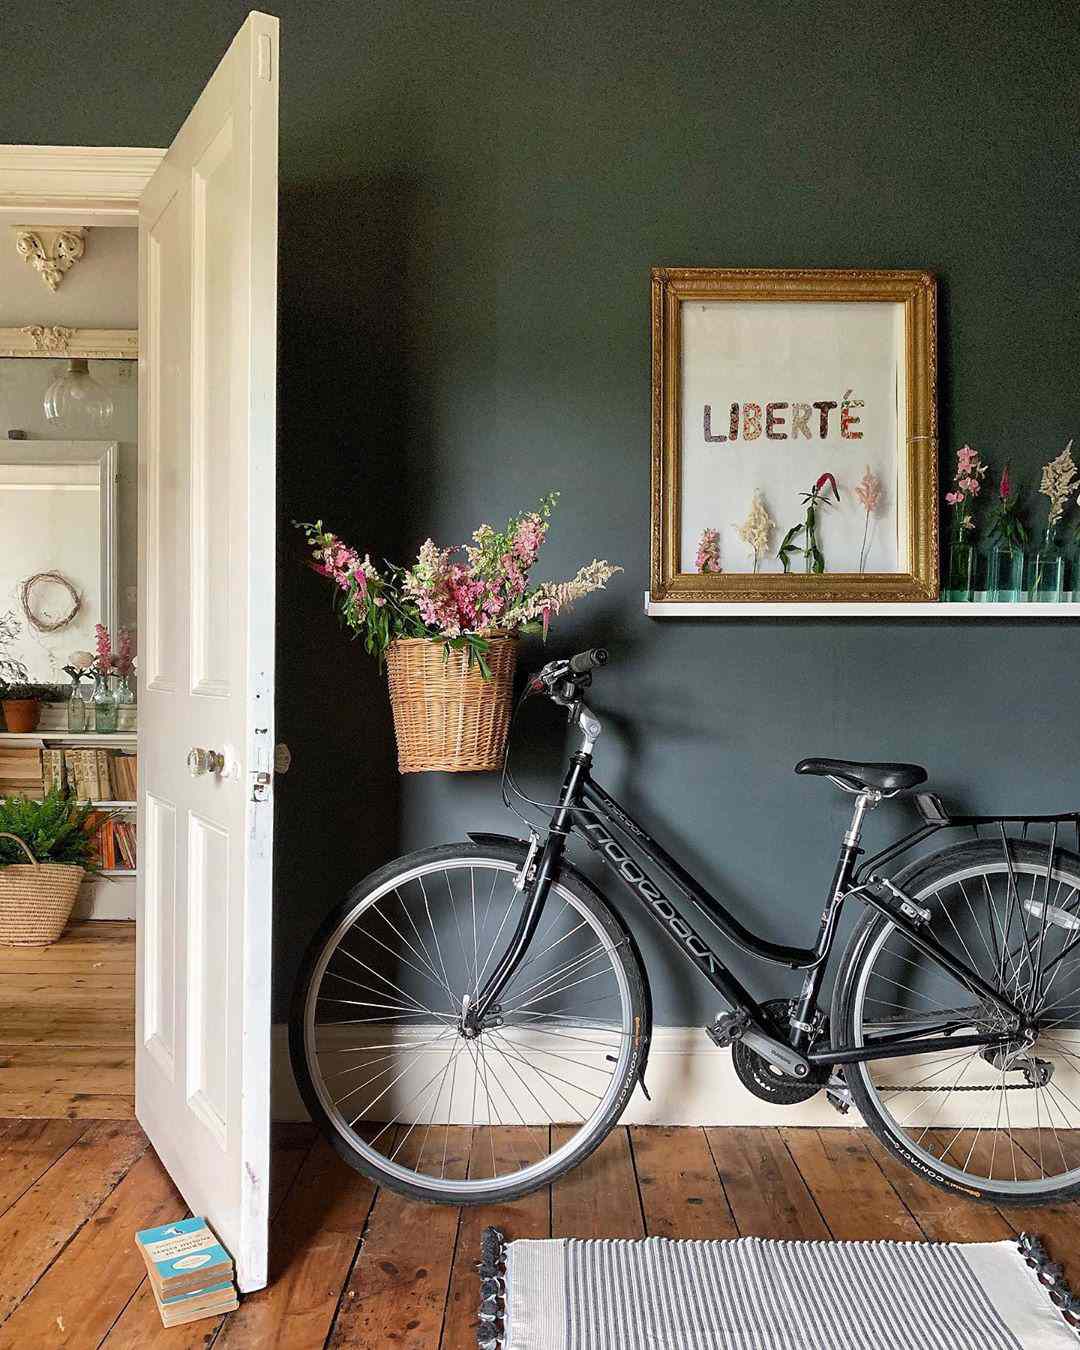 Eingangsbereich mit dunkelgrauen Wänden und Fahrrad mit Blumen im Korb 